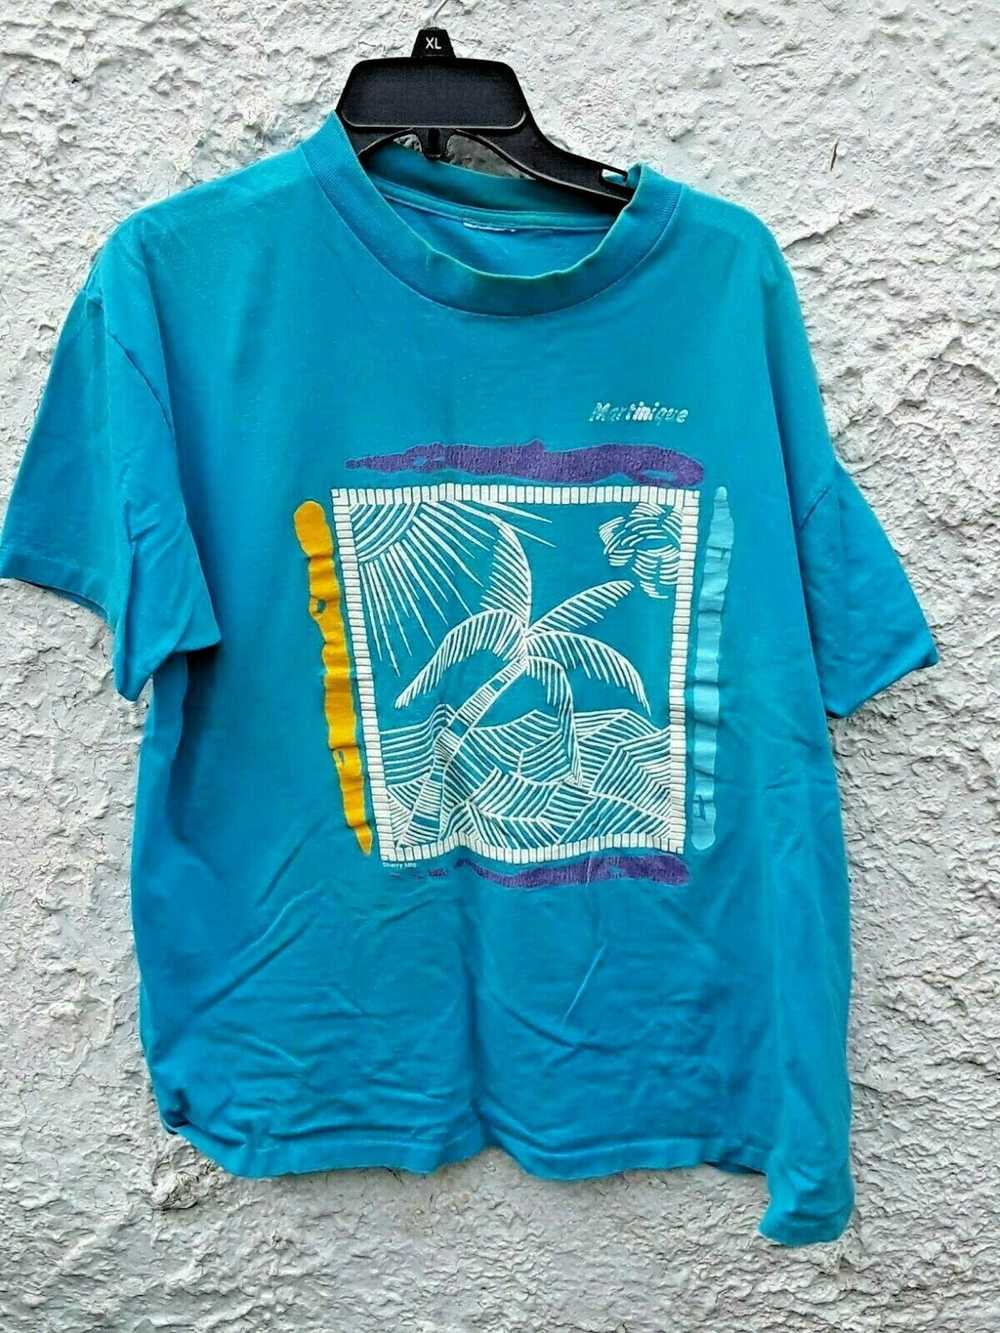 Vintage Vintage 90s Martinique T Shirt XL - image 1